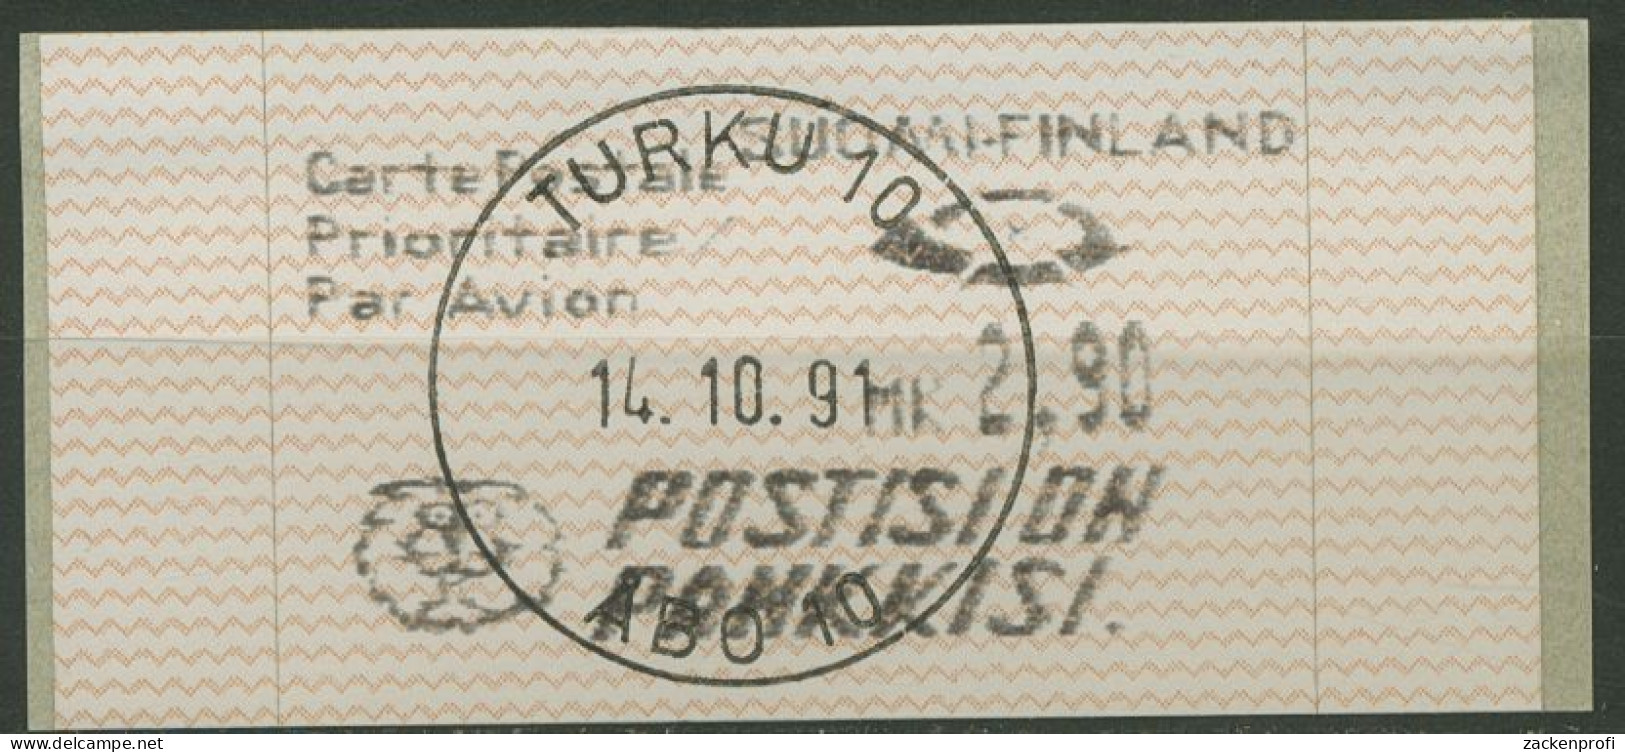 Finnland Automatenmarken 1991 2,90 MK Einzelwert, ATM 10.2 Z 3 Gestempelt - Automaatzegels [ATM]